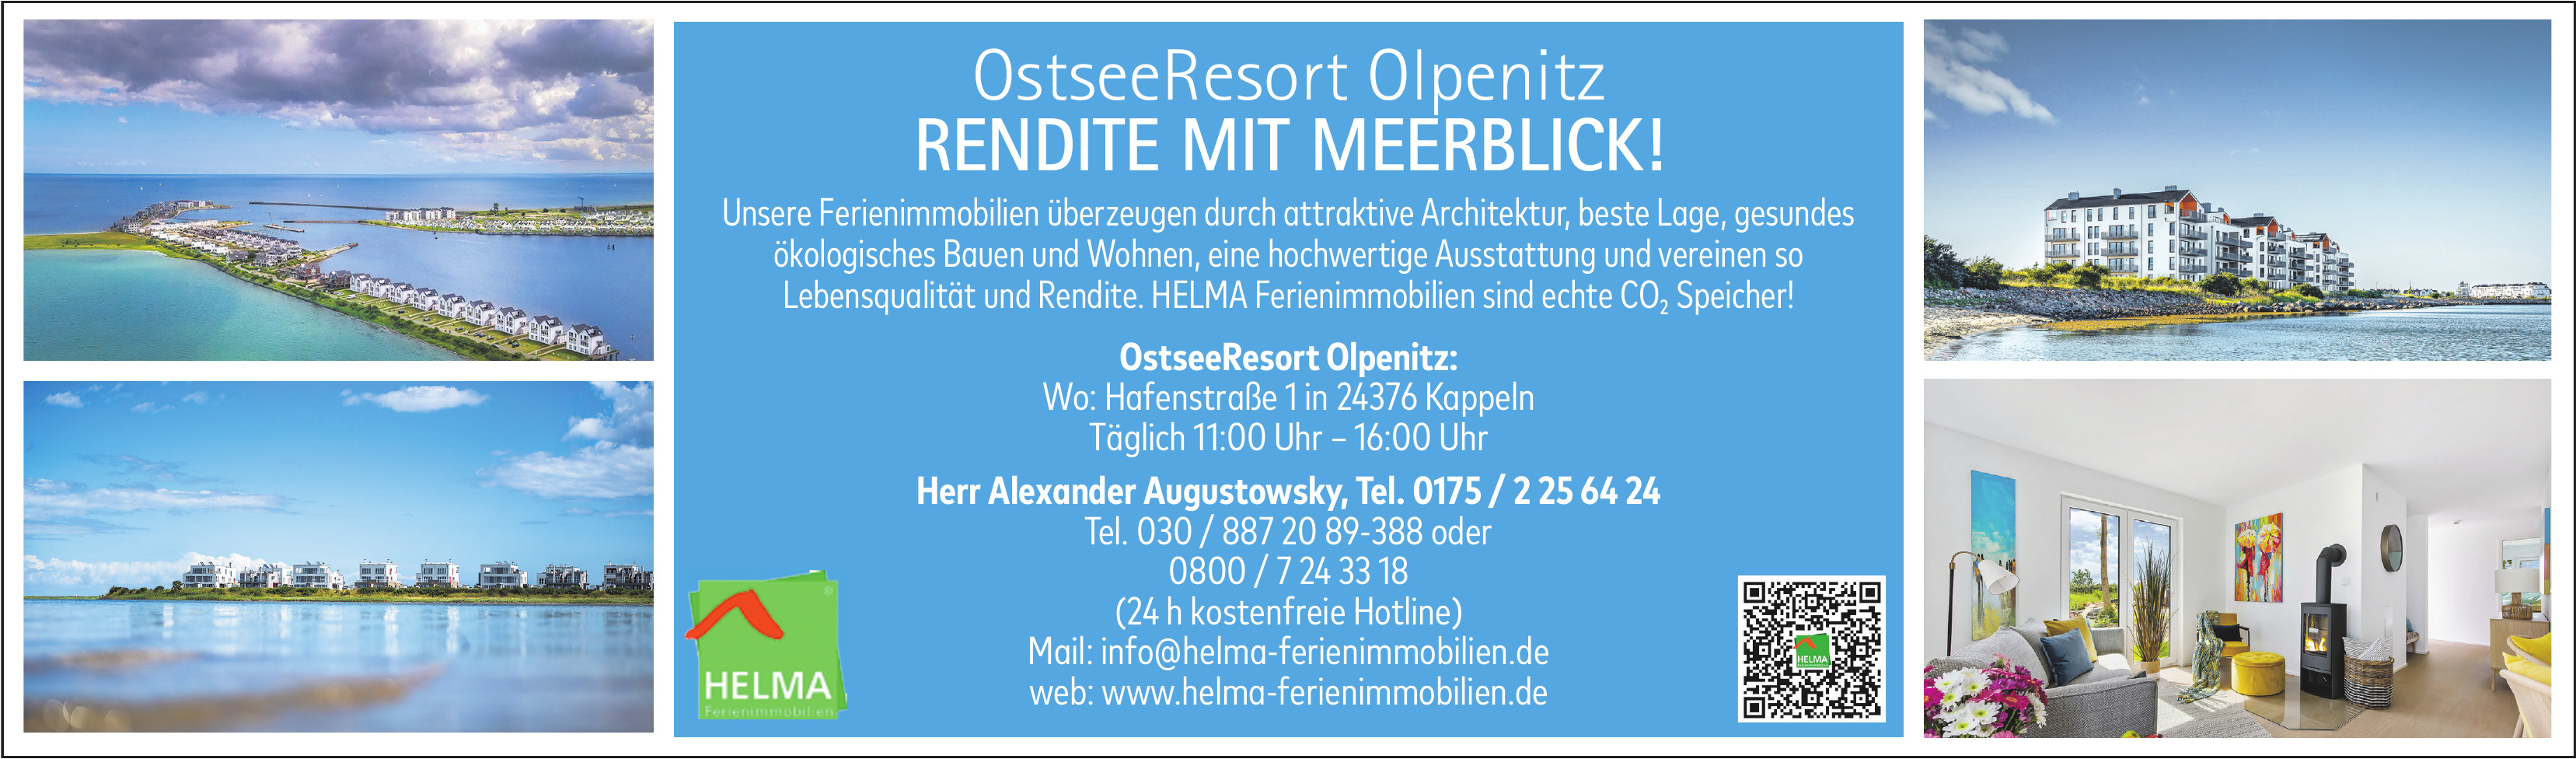 HELMA Ferienimmobilien - OstseeResort Olpenitz